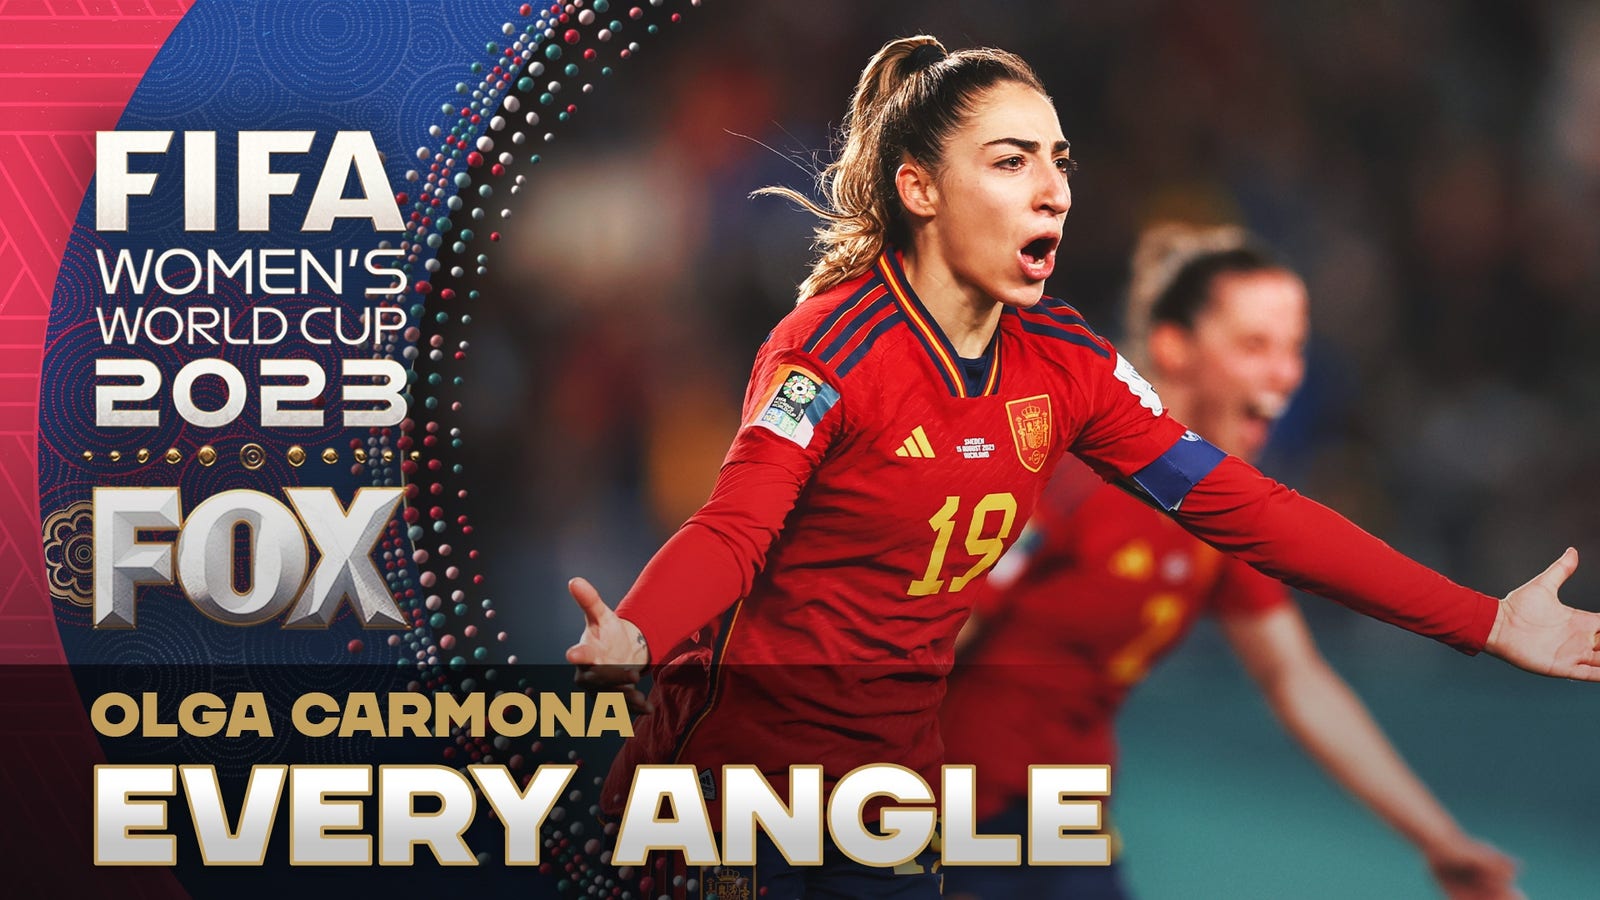 Olga Carmona scores game-winner for Spain